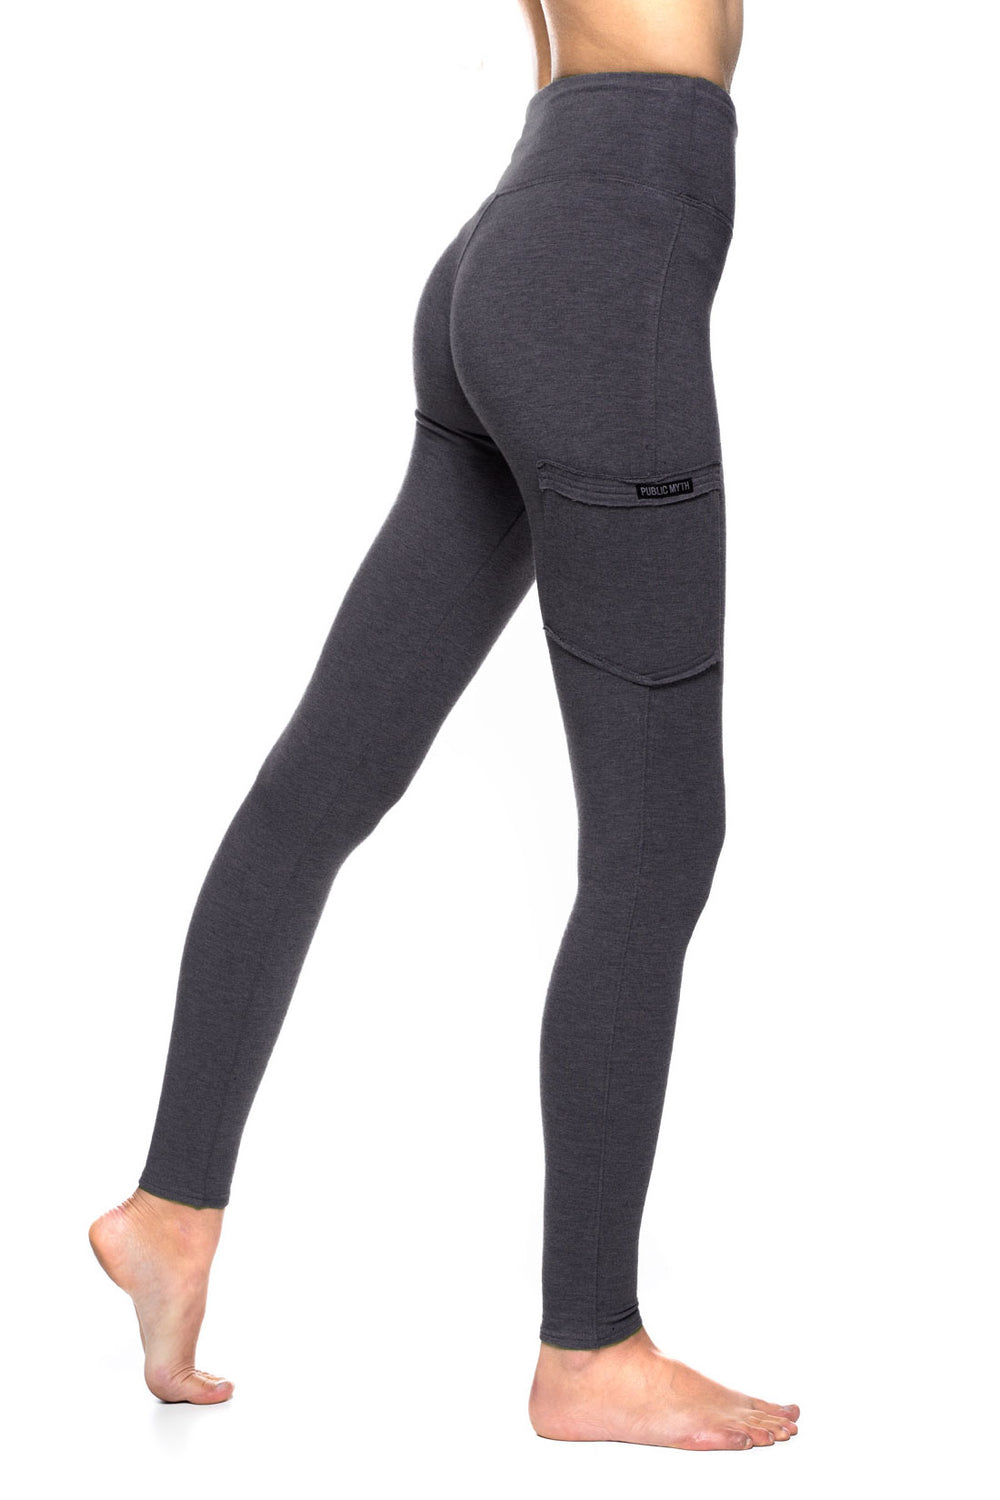 Hot Yoga Clothings: Yoga Leggings, Shorts & Bras - WEDOYOGA